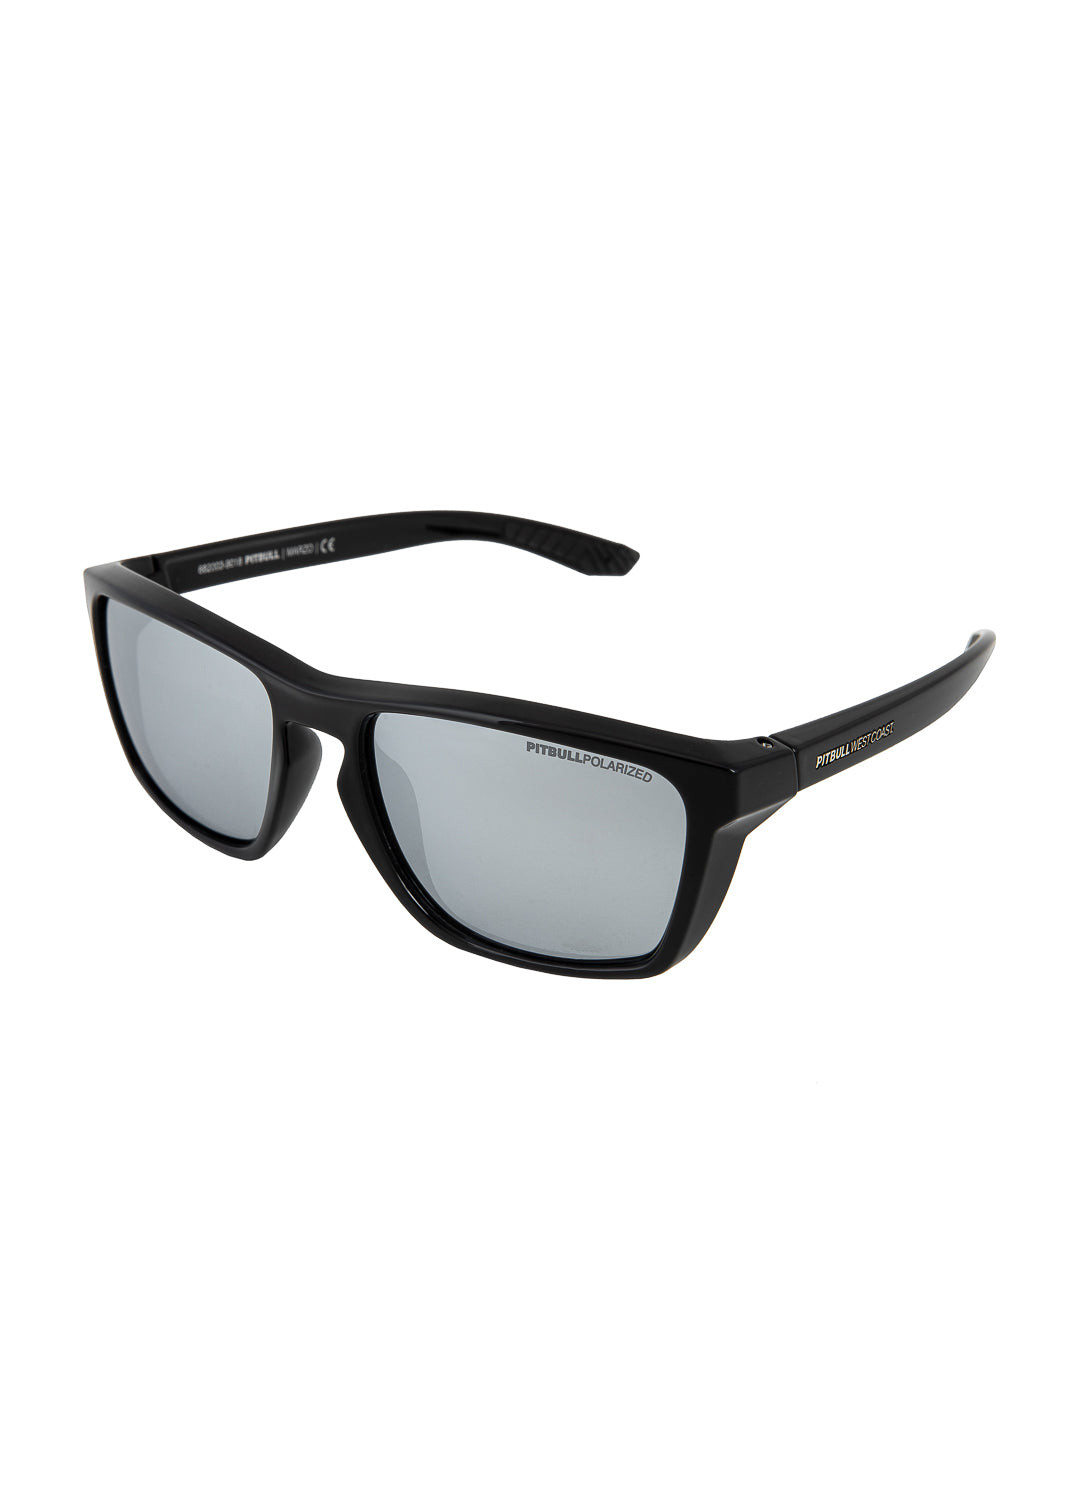 Sunglasses Black/Silver MARZO.